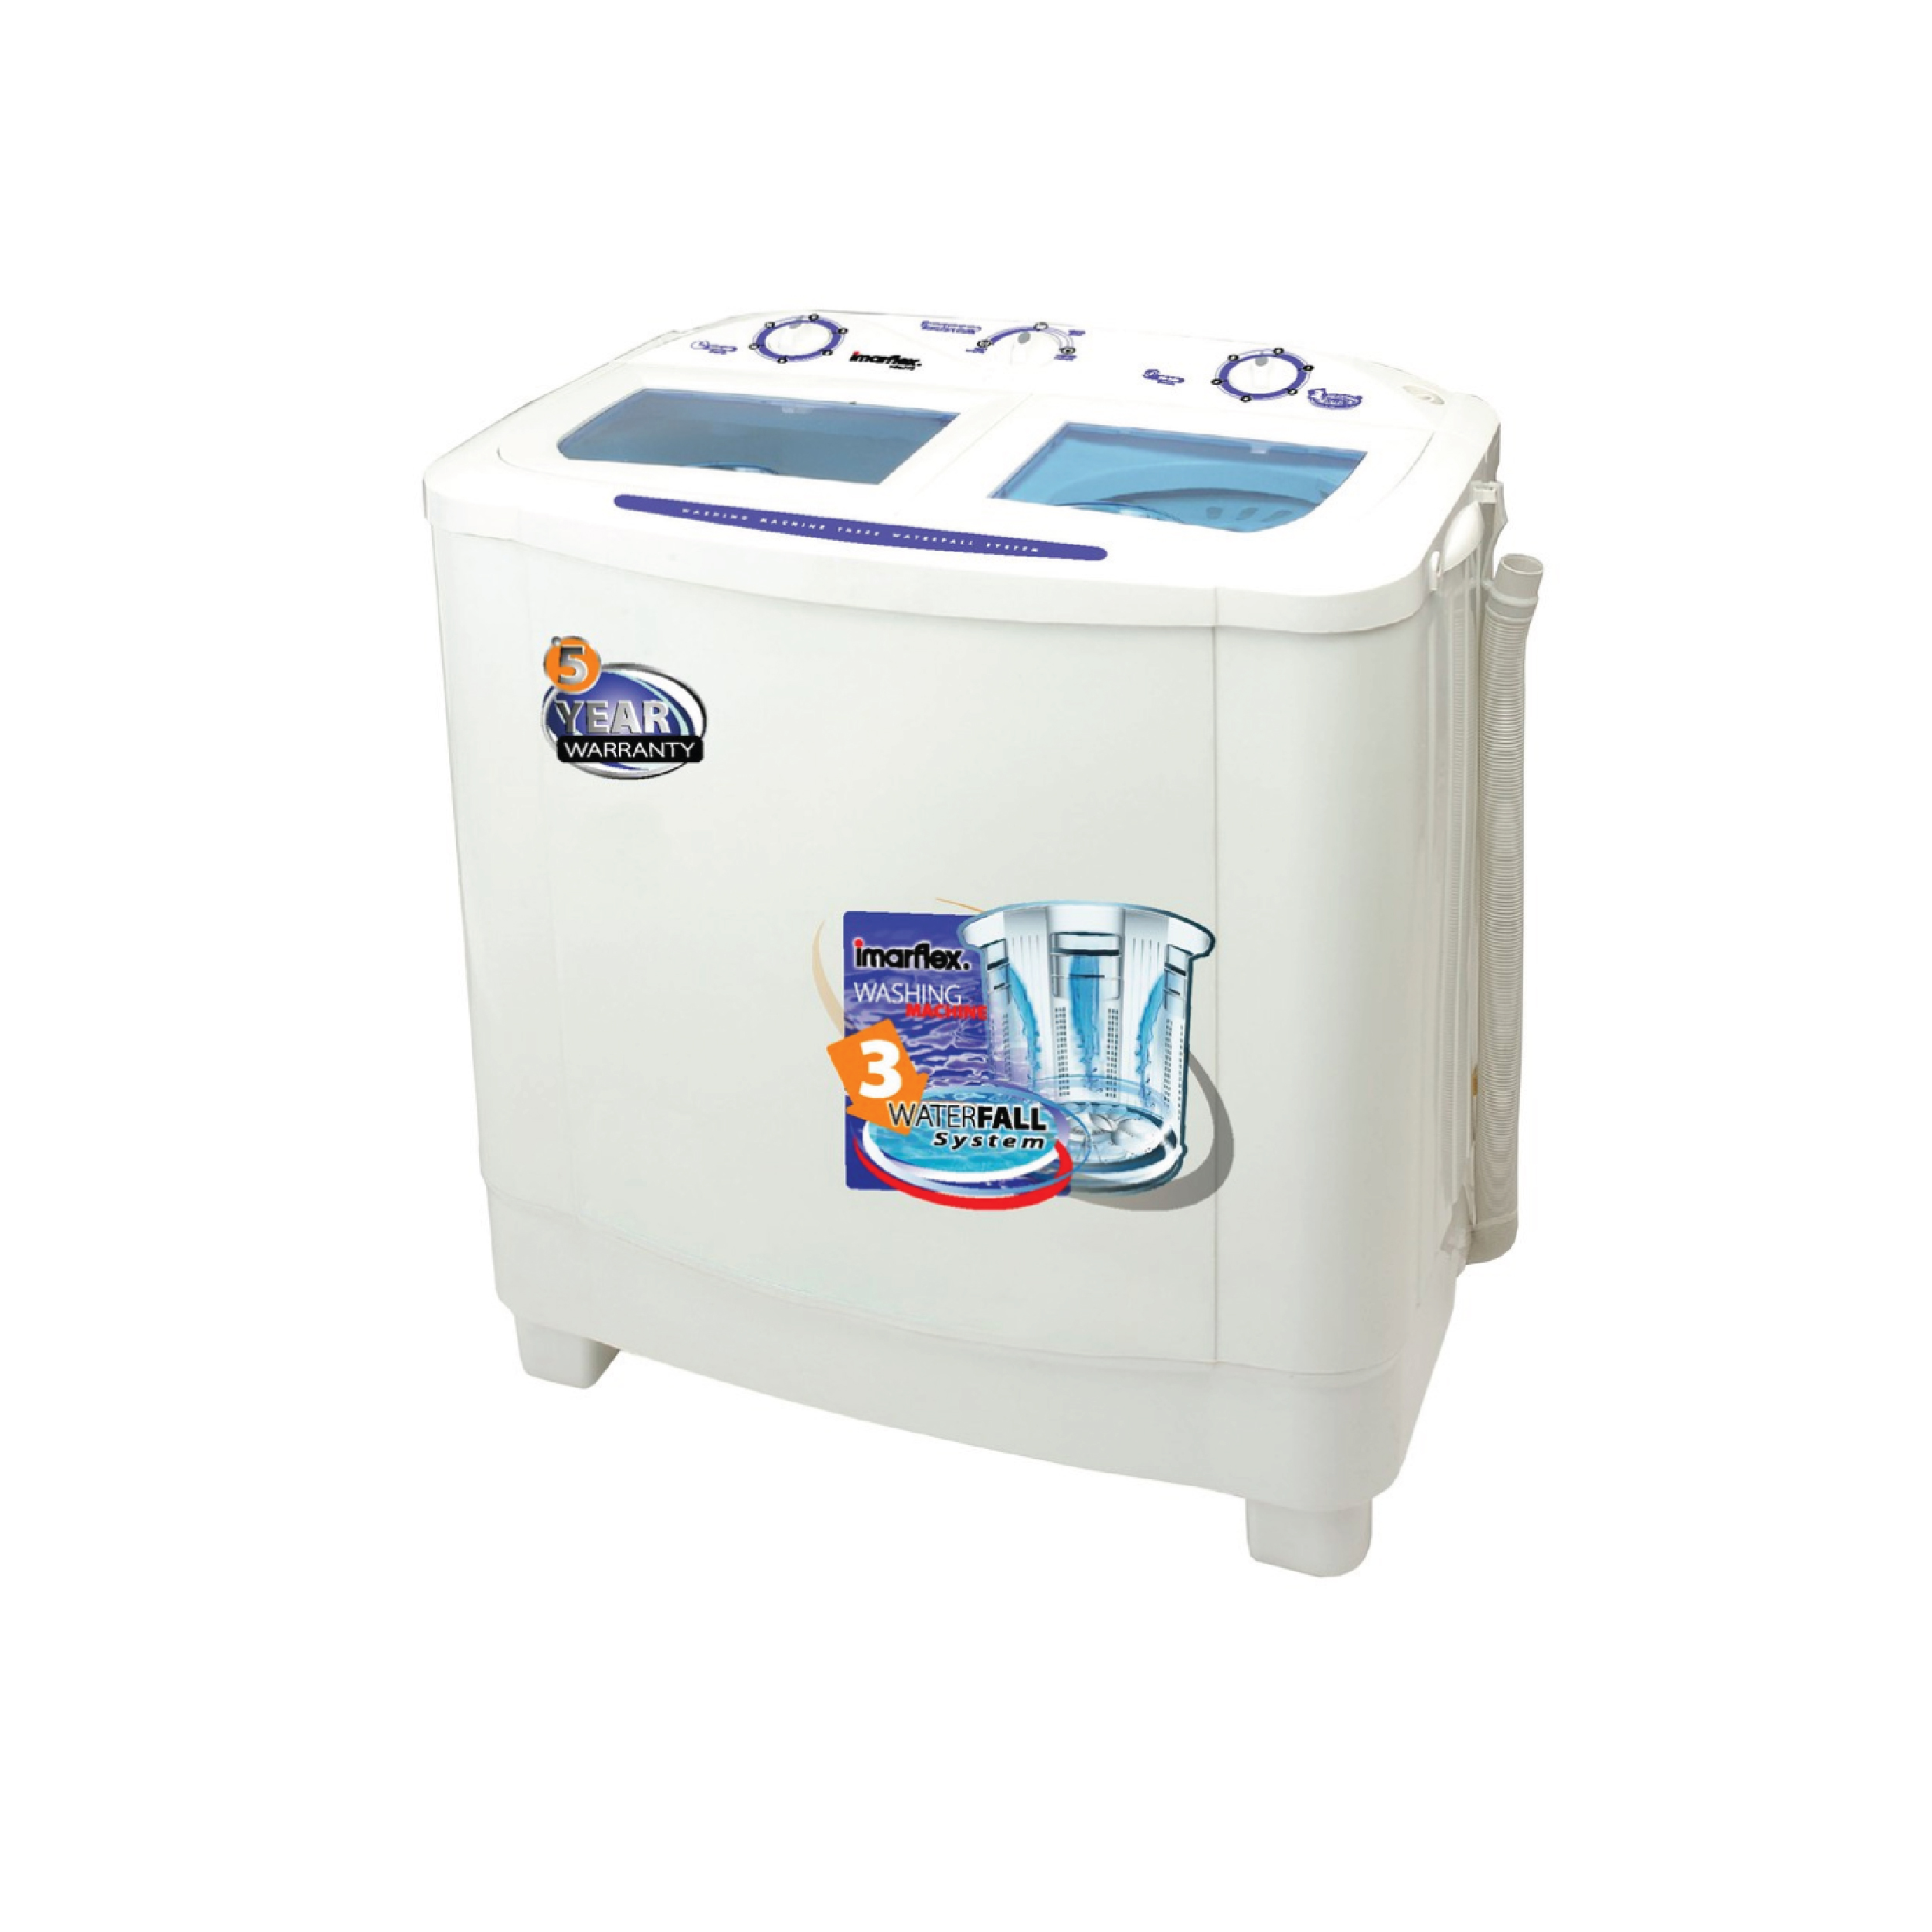 แนะนำเครื่องซักผ้าถังคู่ราคาประหยัดจาก Imarflex รุ่น WM-772